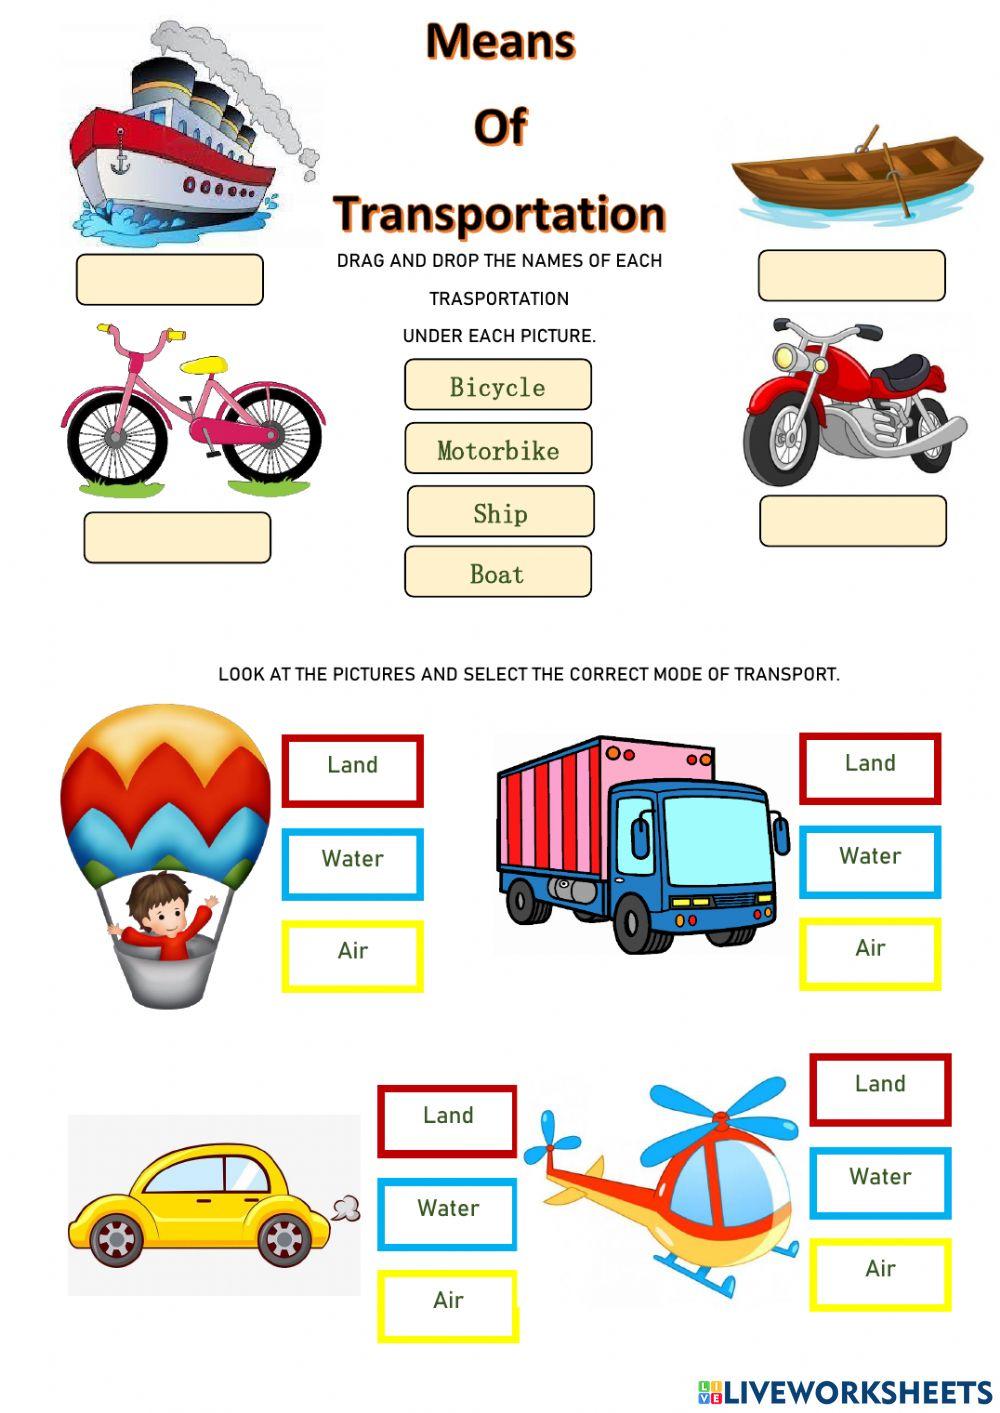 Means of Transportation online pdf worksheet